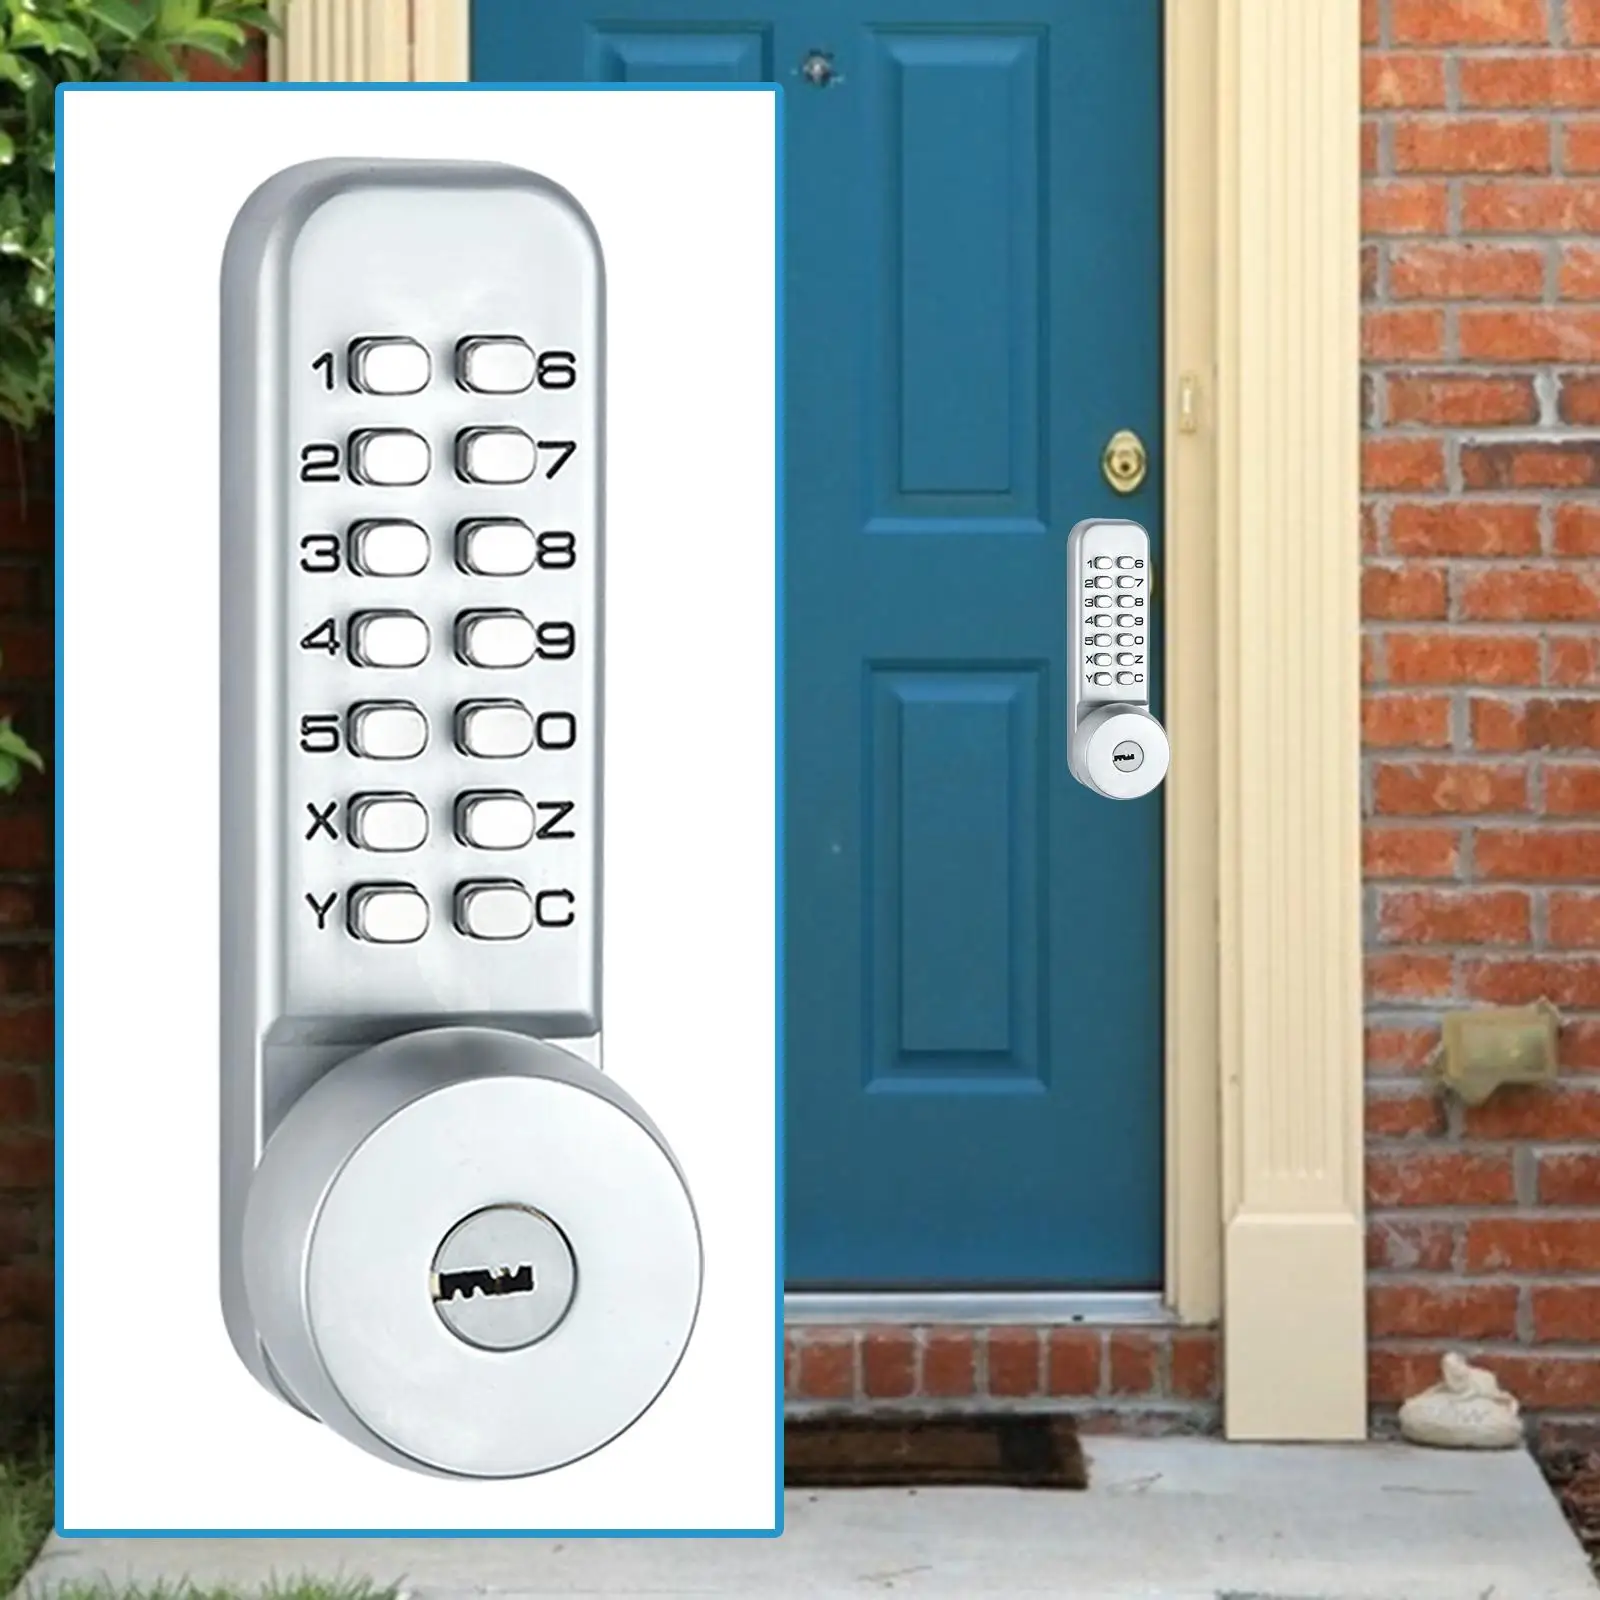 Mechanical Door Lock Waterproof Digital Code Combination Door Lock for Home